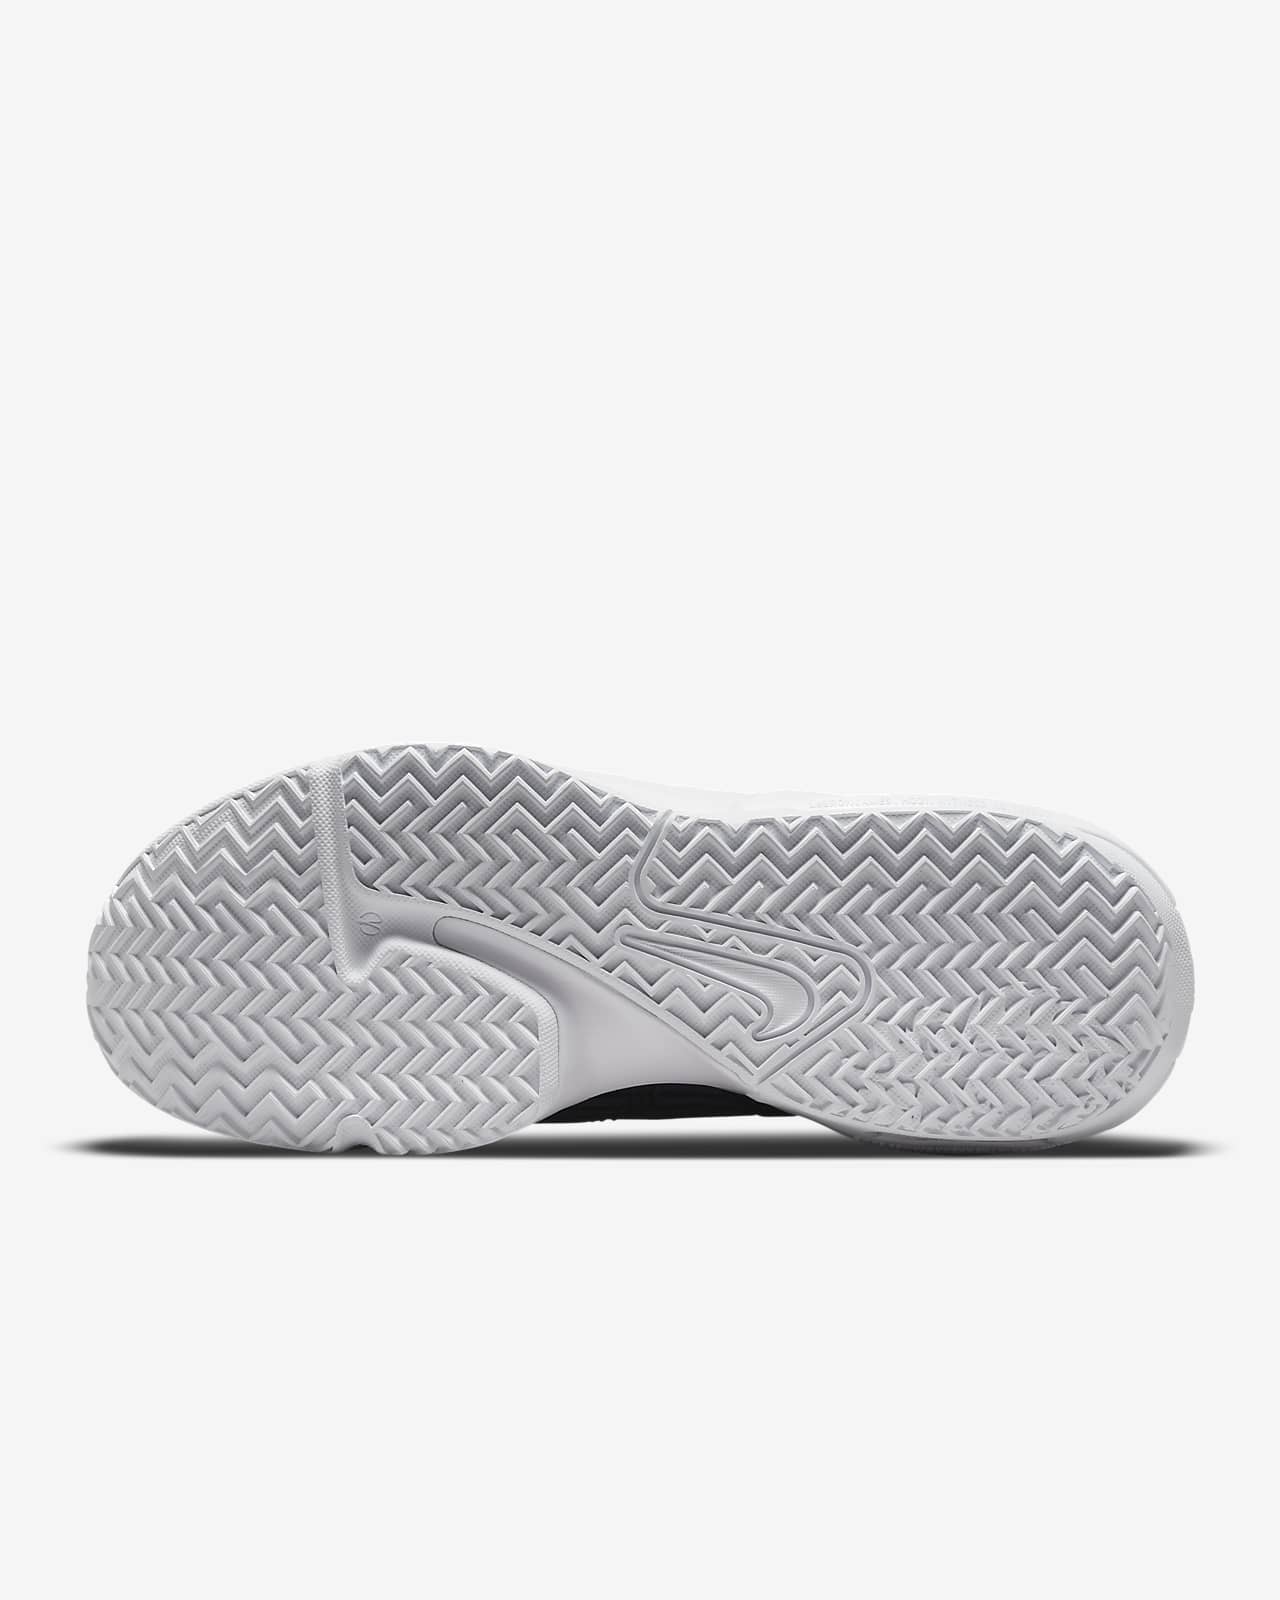 LeBron Witness 6 Basketball Shoes. Nike CA